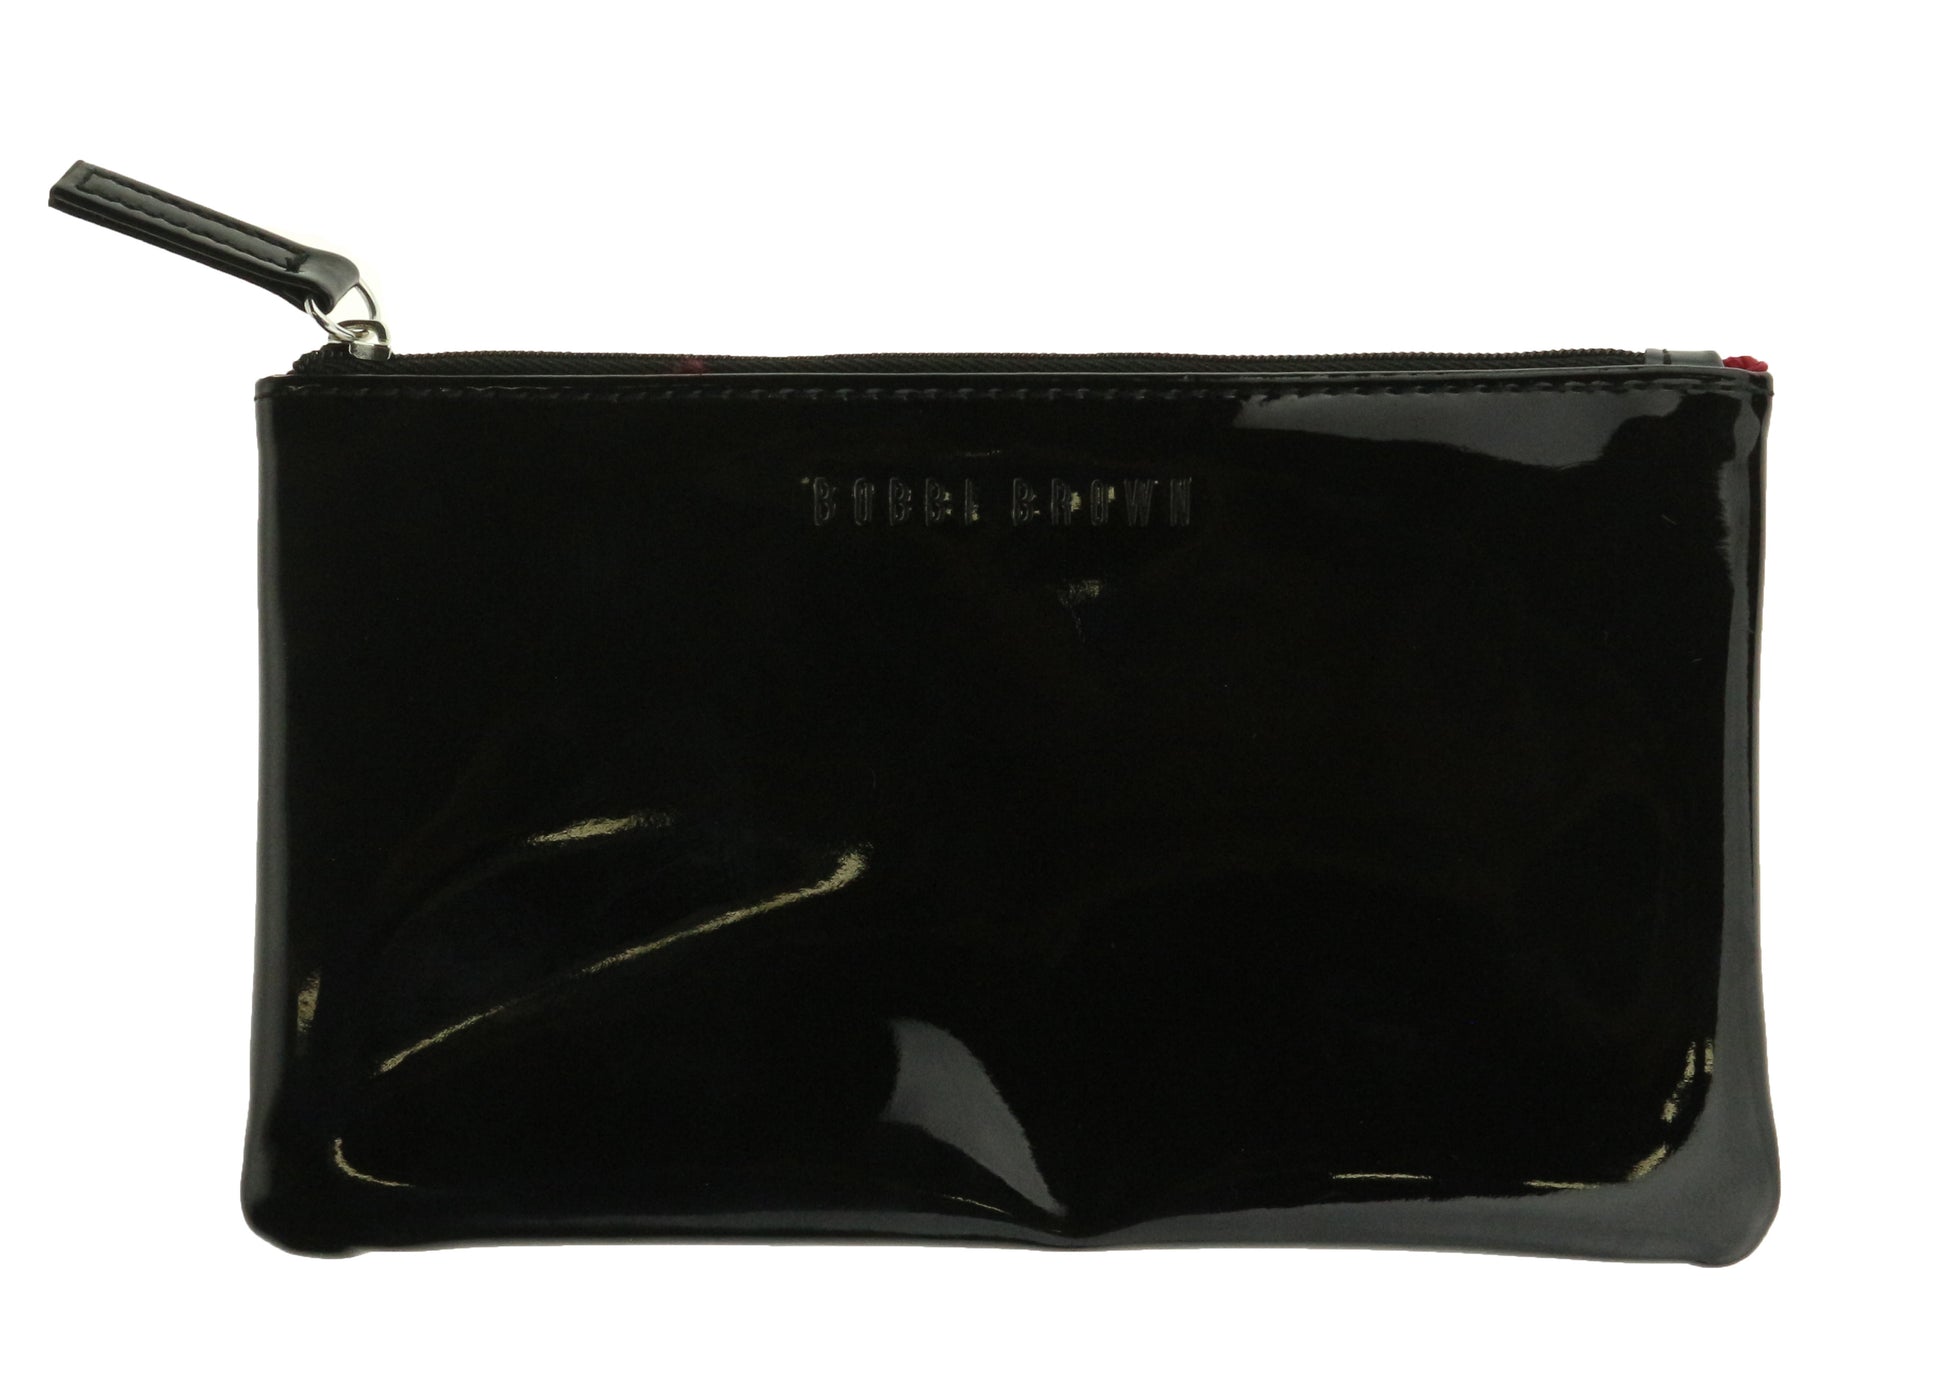 Bobbi Brown Patent Leather Black Makeup Bag Clutch New Makeup Bag